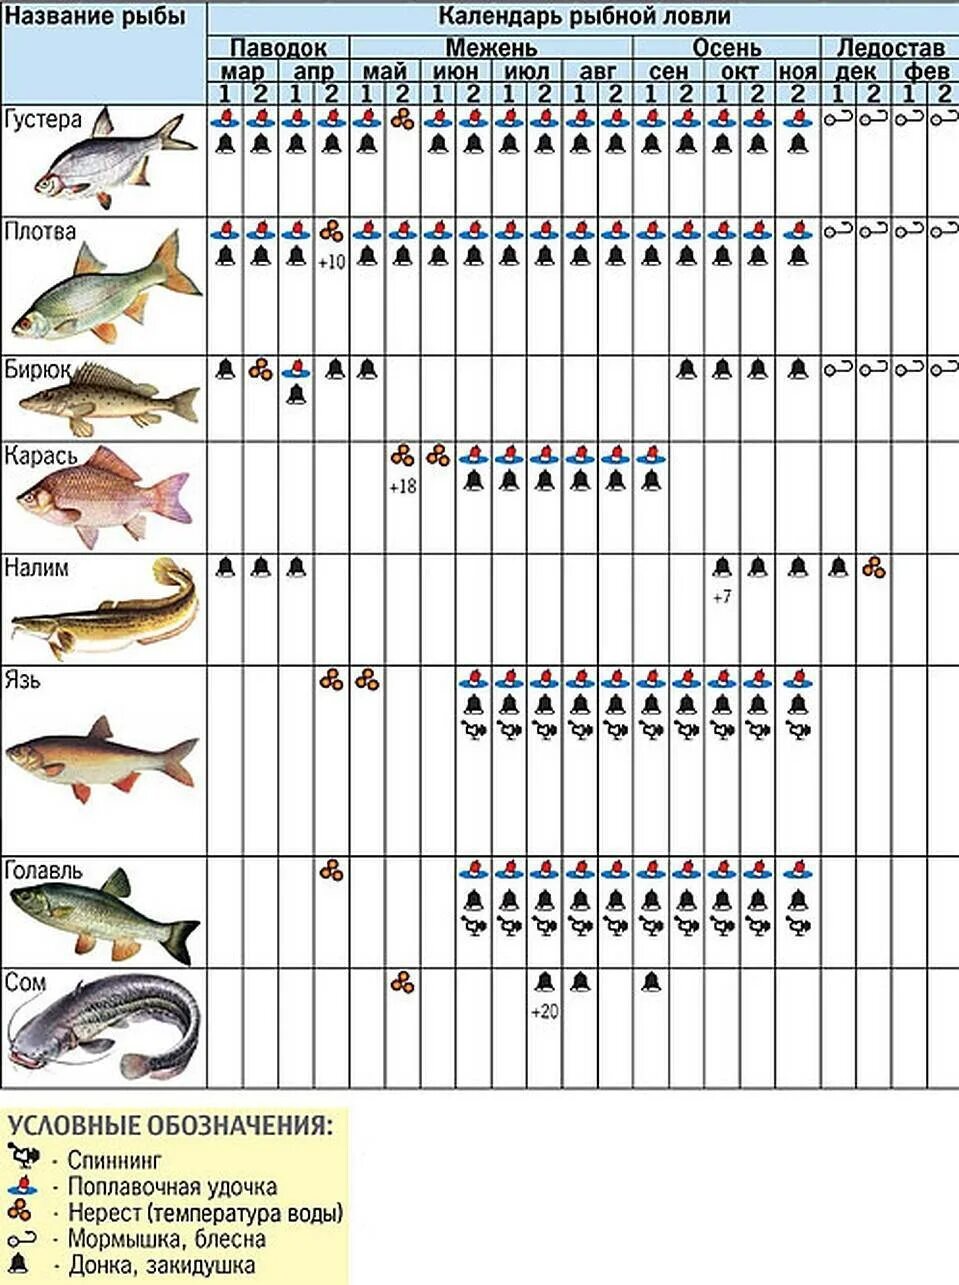 Можно ли ловить рыбу на удочку. Календарь рыбалки. На что можно лов ть рыбу. Календарь рыболова. Календарь ловли рыбы.